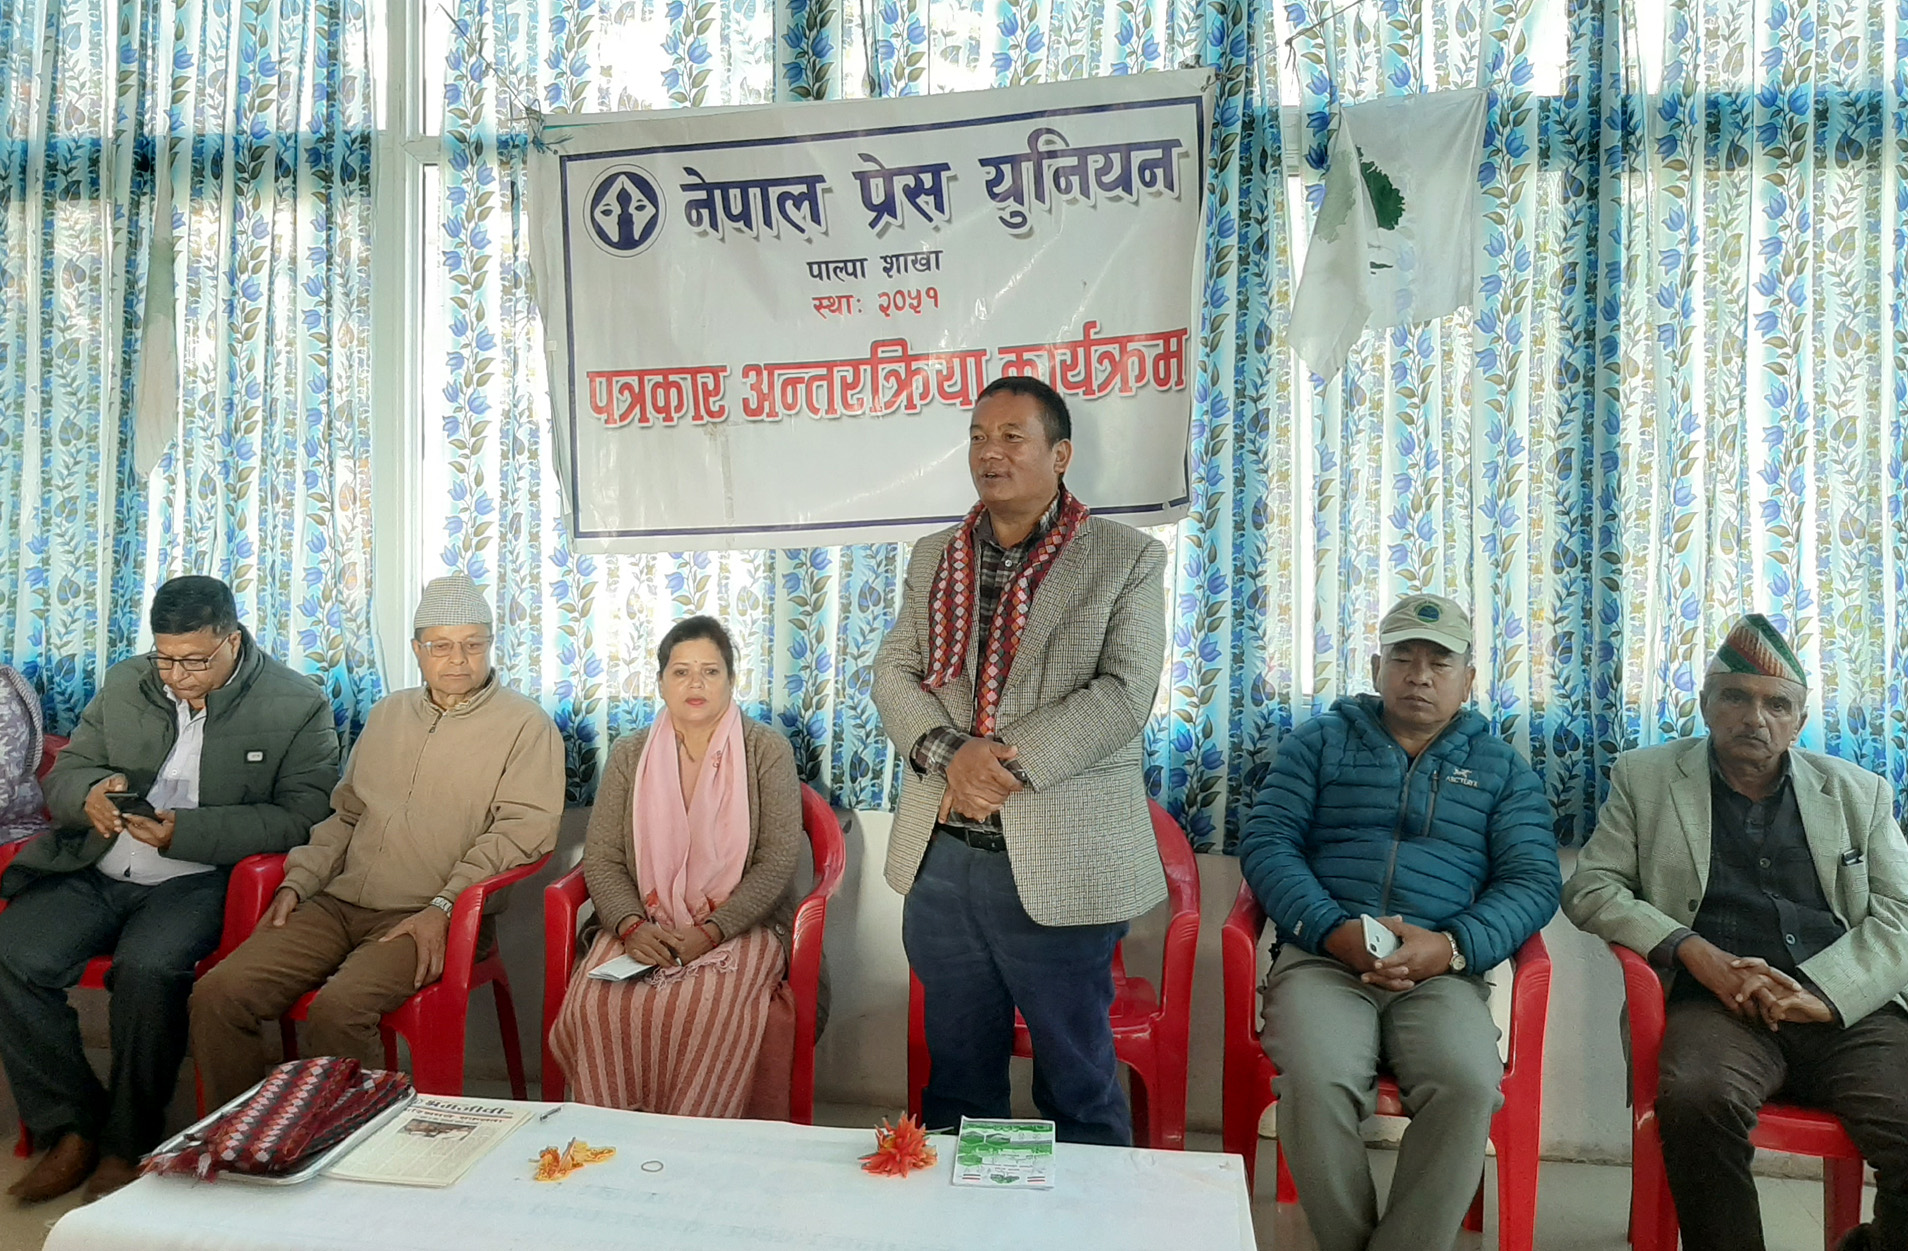  लुम्बिनी प्रदेशमा मन्त्रालय बढाउनु हुँदैन भन्ने हाम्रो अडान हो : सभापति पुन